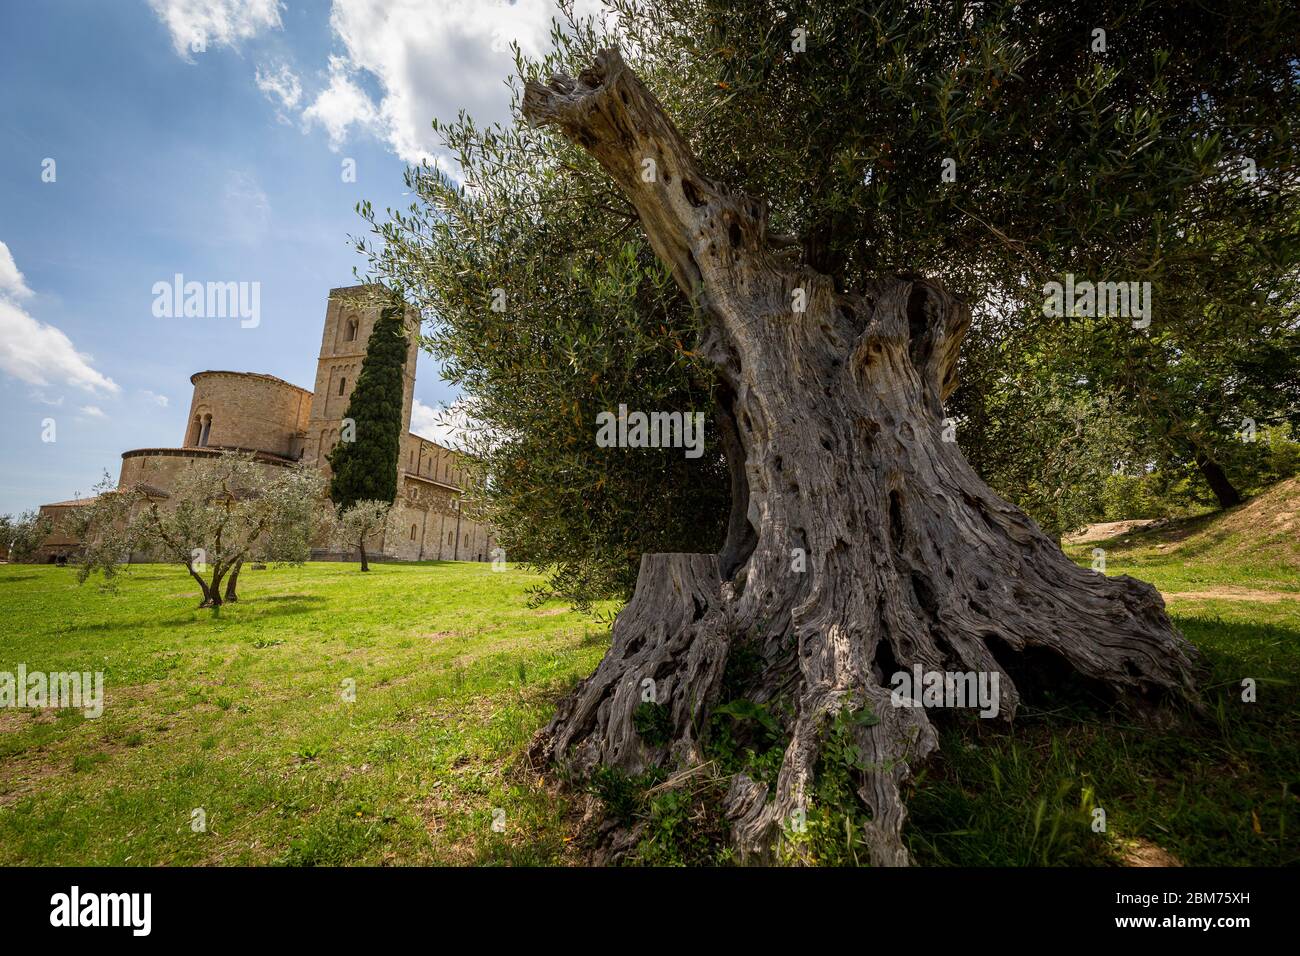 Die Abtei Sant’Antimo liegt ca. 1 km nördlich von Castelnuovo dell’Abate in der toskanischen Provinz Siena, Italien und ist eine Kanonie der Prämonstr Stock Photo